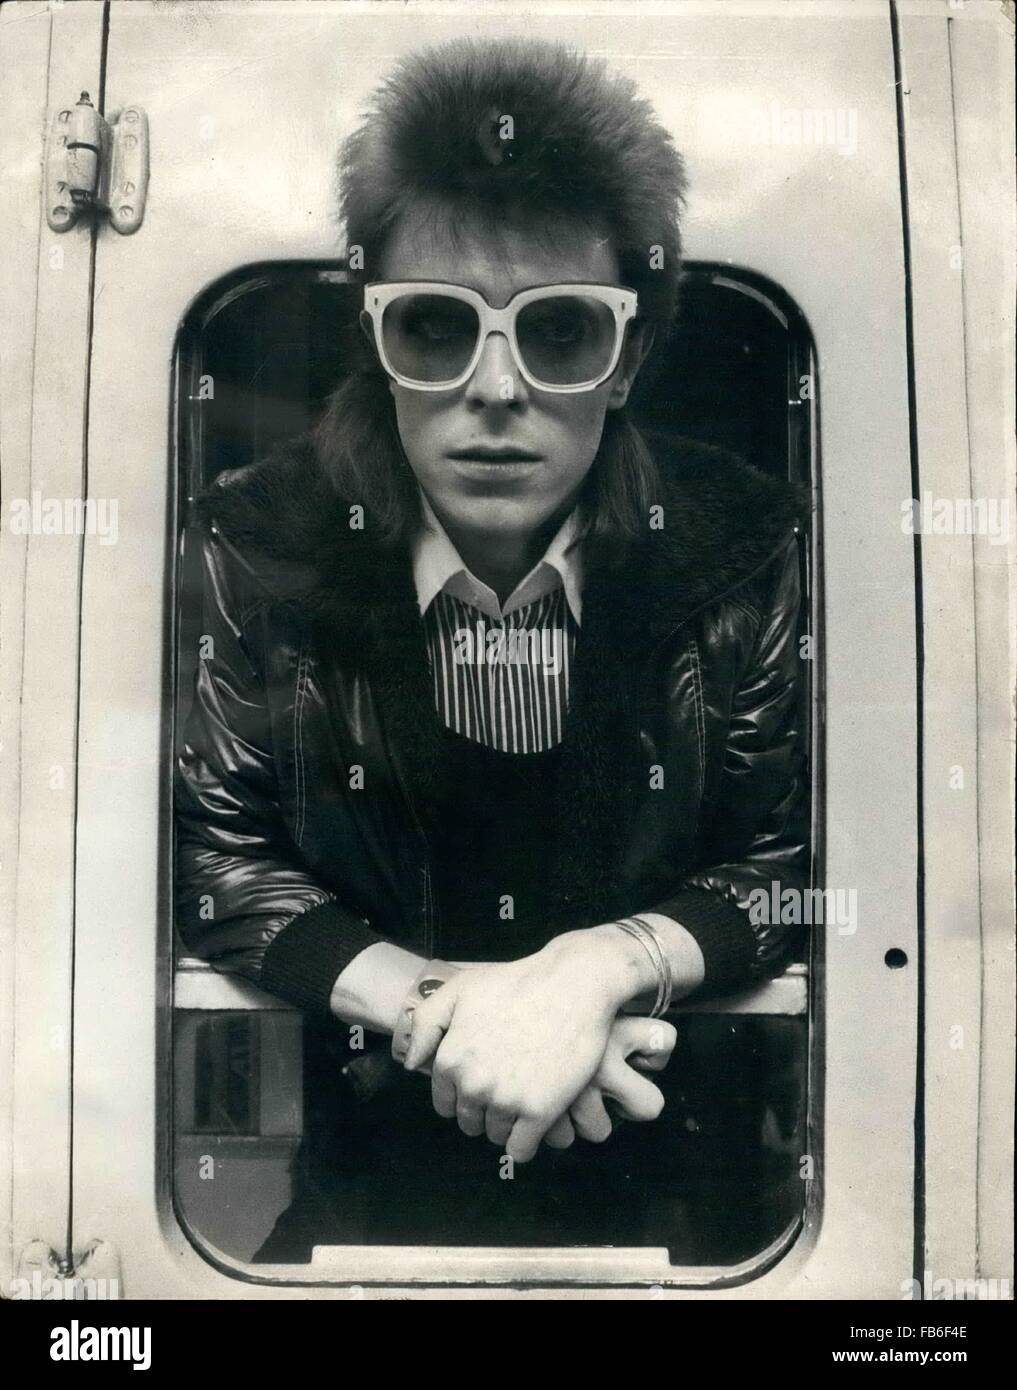 Photos de fichier : Jan 10, 2016 - Fichier - David Bowie, l'infiniment modifiable, férocement des auteur-compositeur qui a enseigné à des générations de musiciens sur le pouvoir de l'art dramatique, images et personae, est mort dimanche, entourés de leur famille. Il a été 69. Bowie est décédé après 18 mois de lutte contre le cancer. Sur la photo : Juillet 07, 1973 - David Bowie à Paris. : David Bowie, la pop star qui, la semaine dernière, arrêter de donner des concerts à l'apogée de sa popularité, n'a certainement pas cessé de travailler. Credit : ZUMA Press, Inc./Alamy Live News Banque D'Images